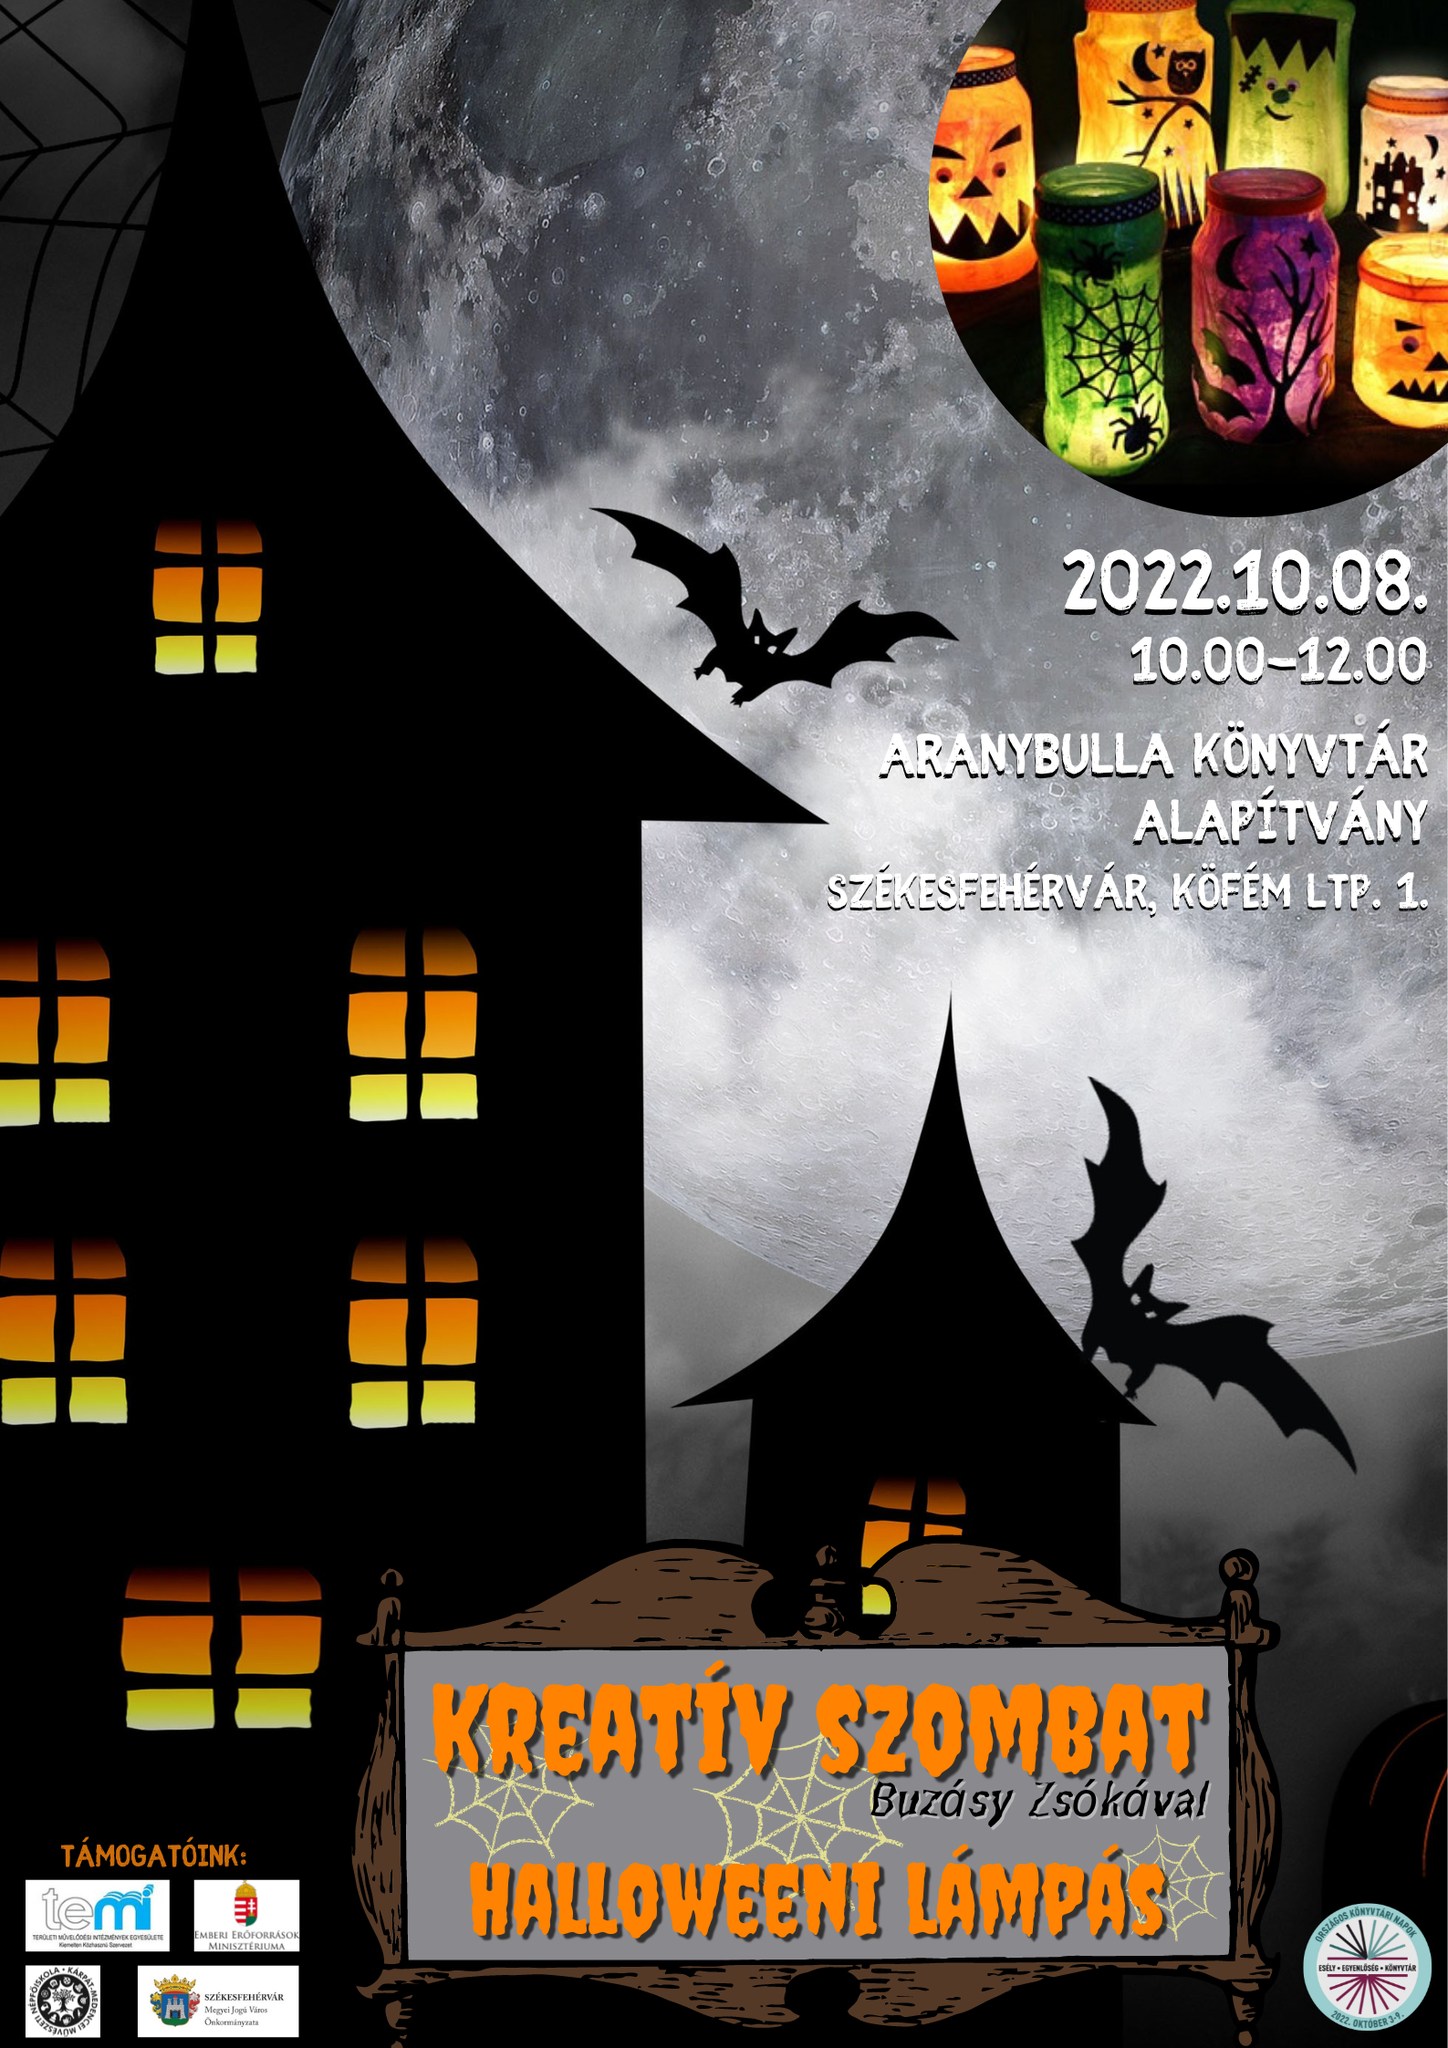 Halloween-lámpás készítéssel folytatódik a Kreatív Szombat az Aranybullában